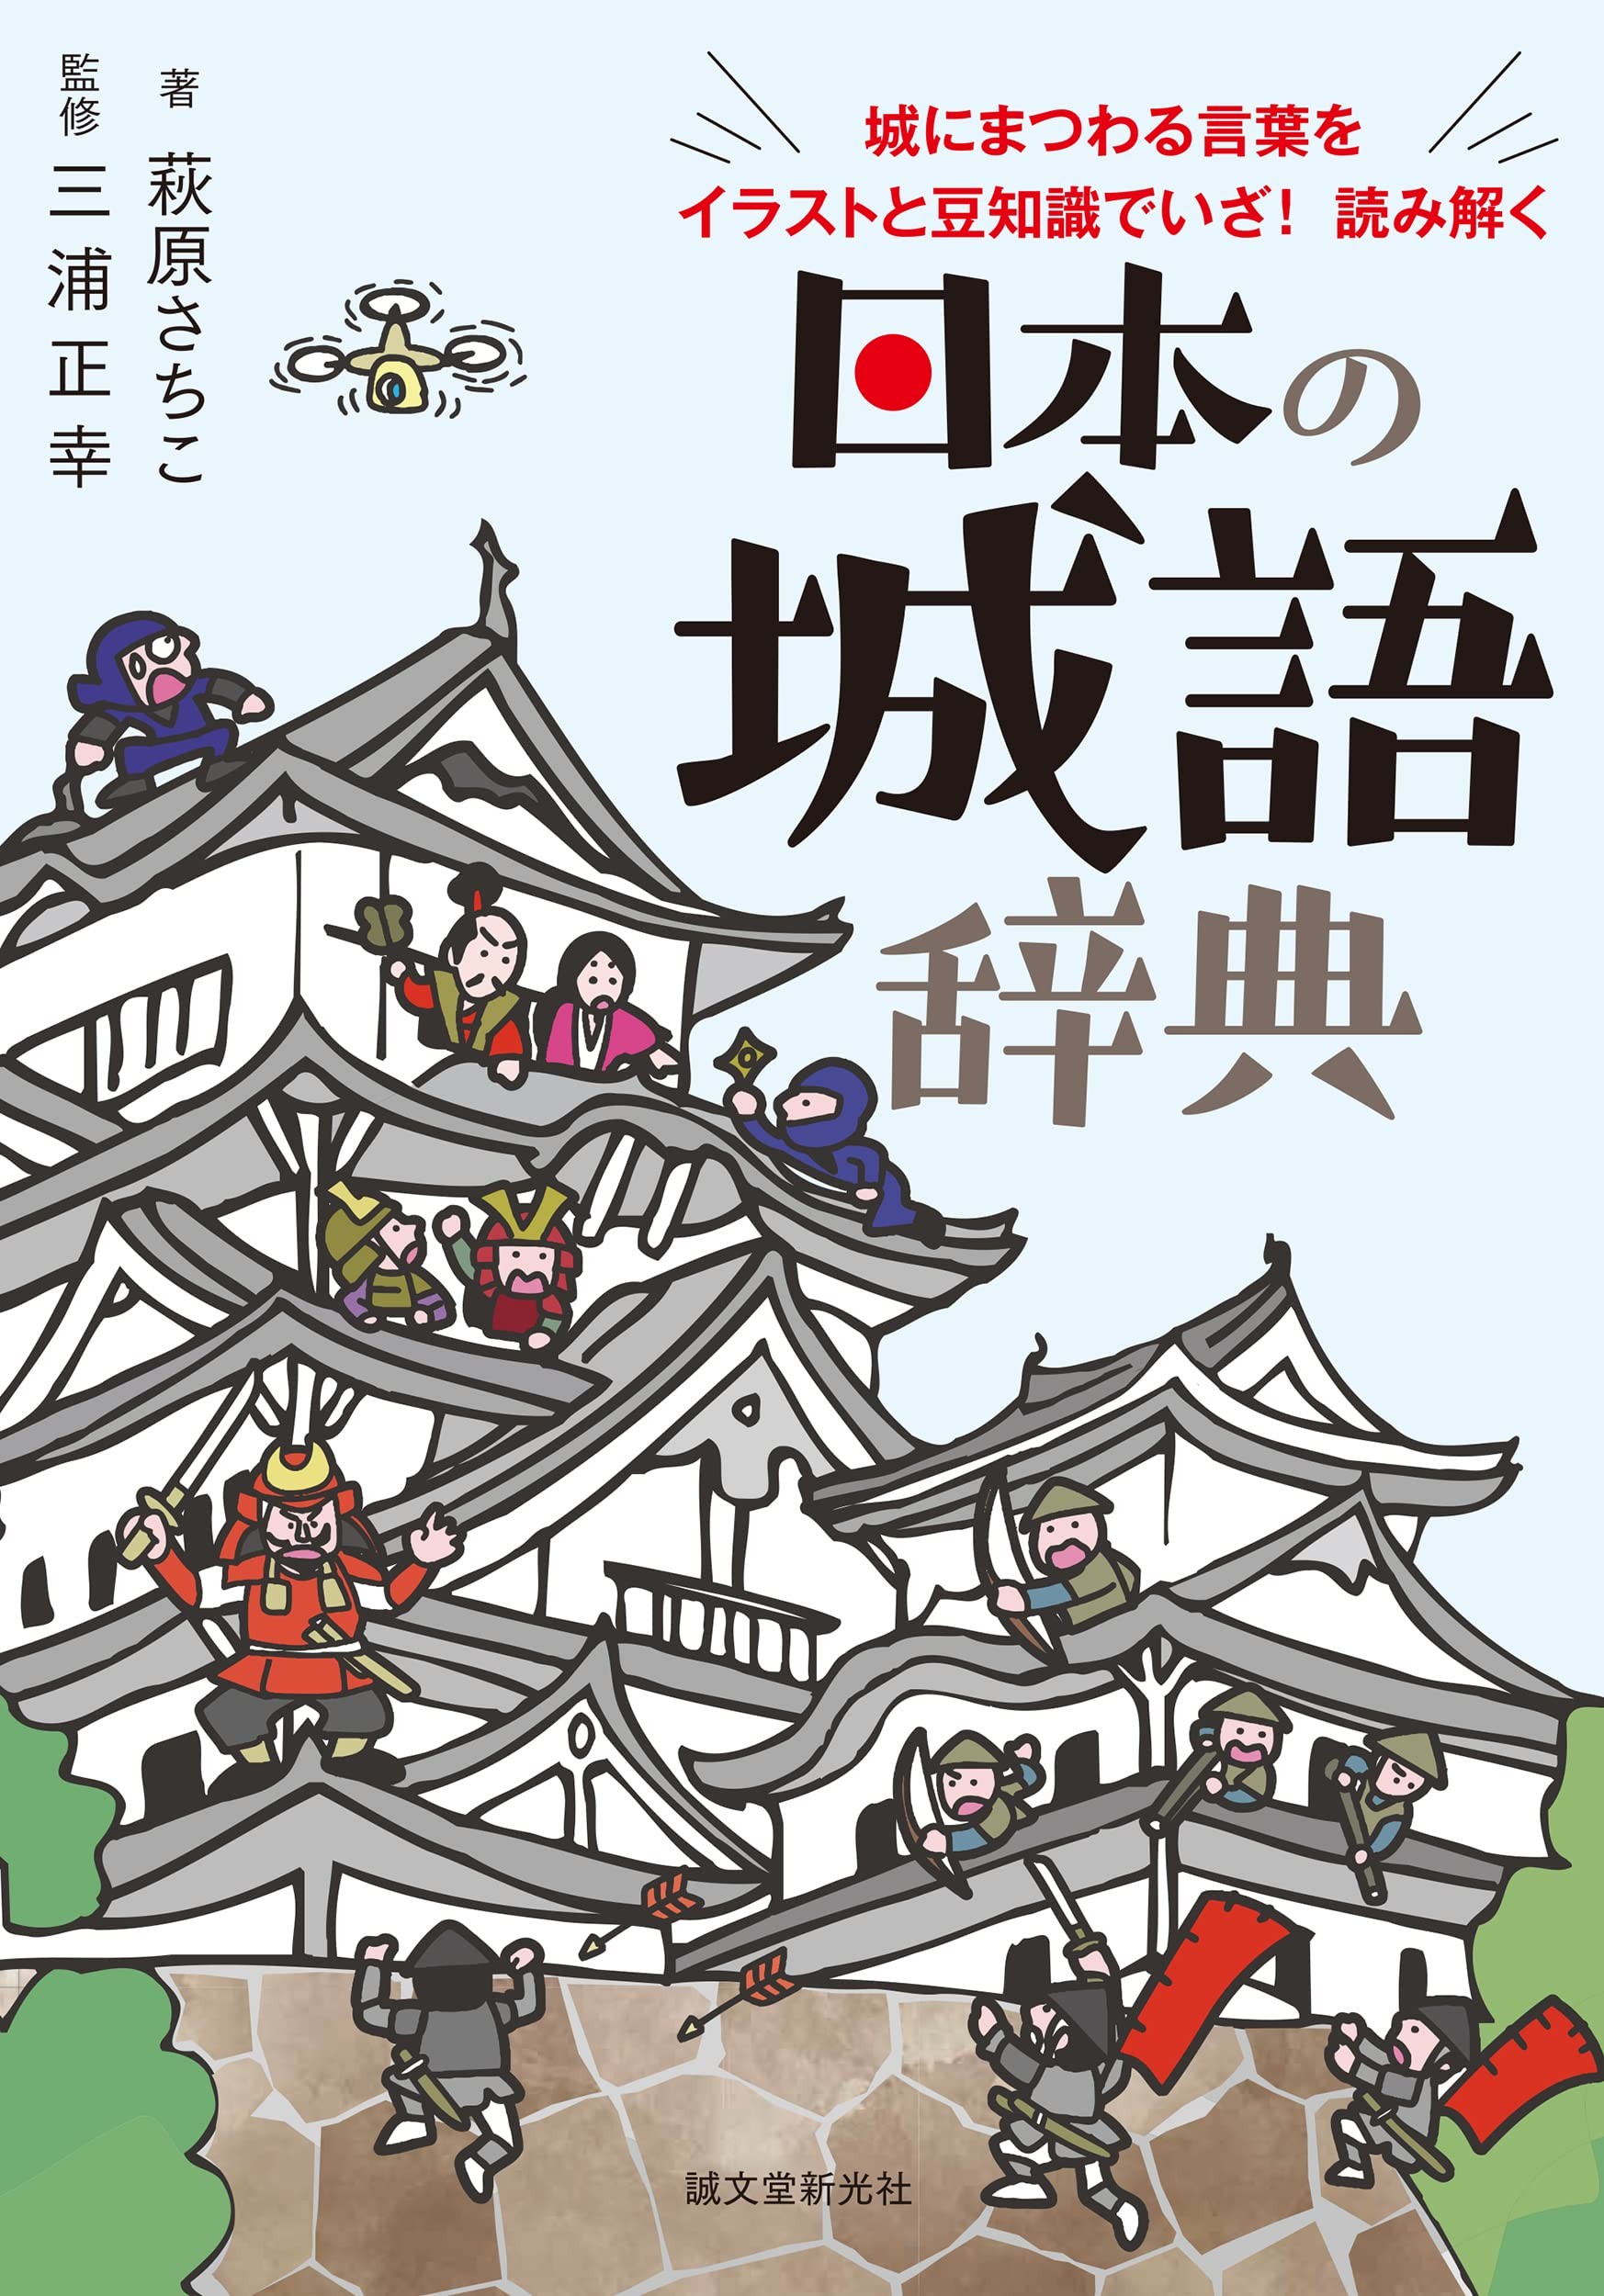 城にまつわる用語を豊富なイラストや写真で紹介 日本の城語辞典 発売 ニュース Rooftop